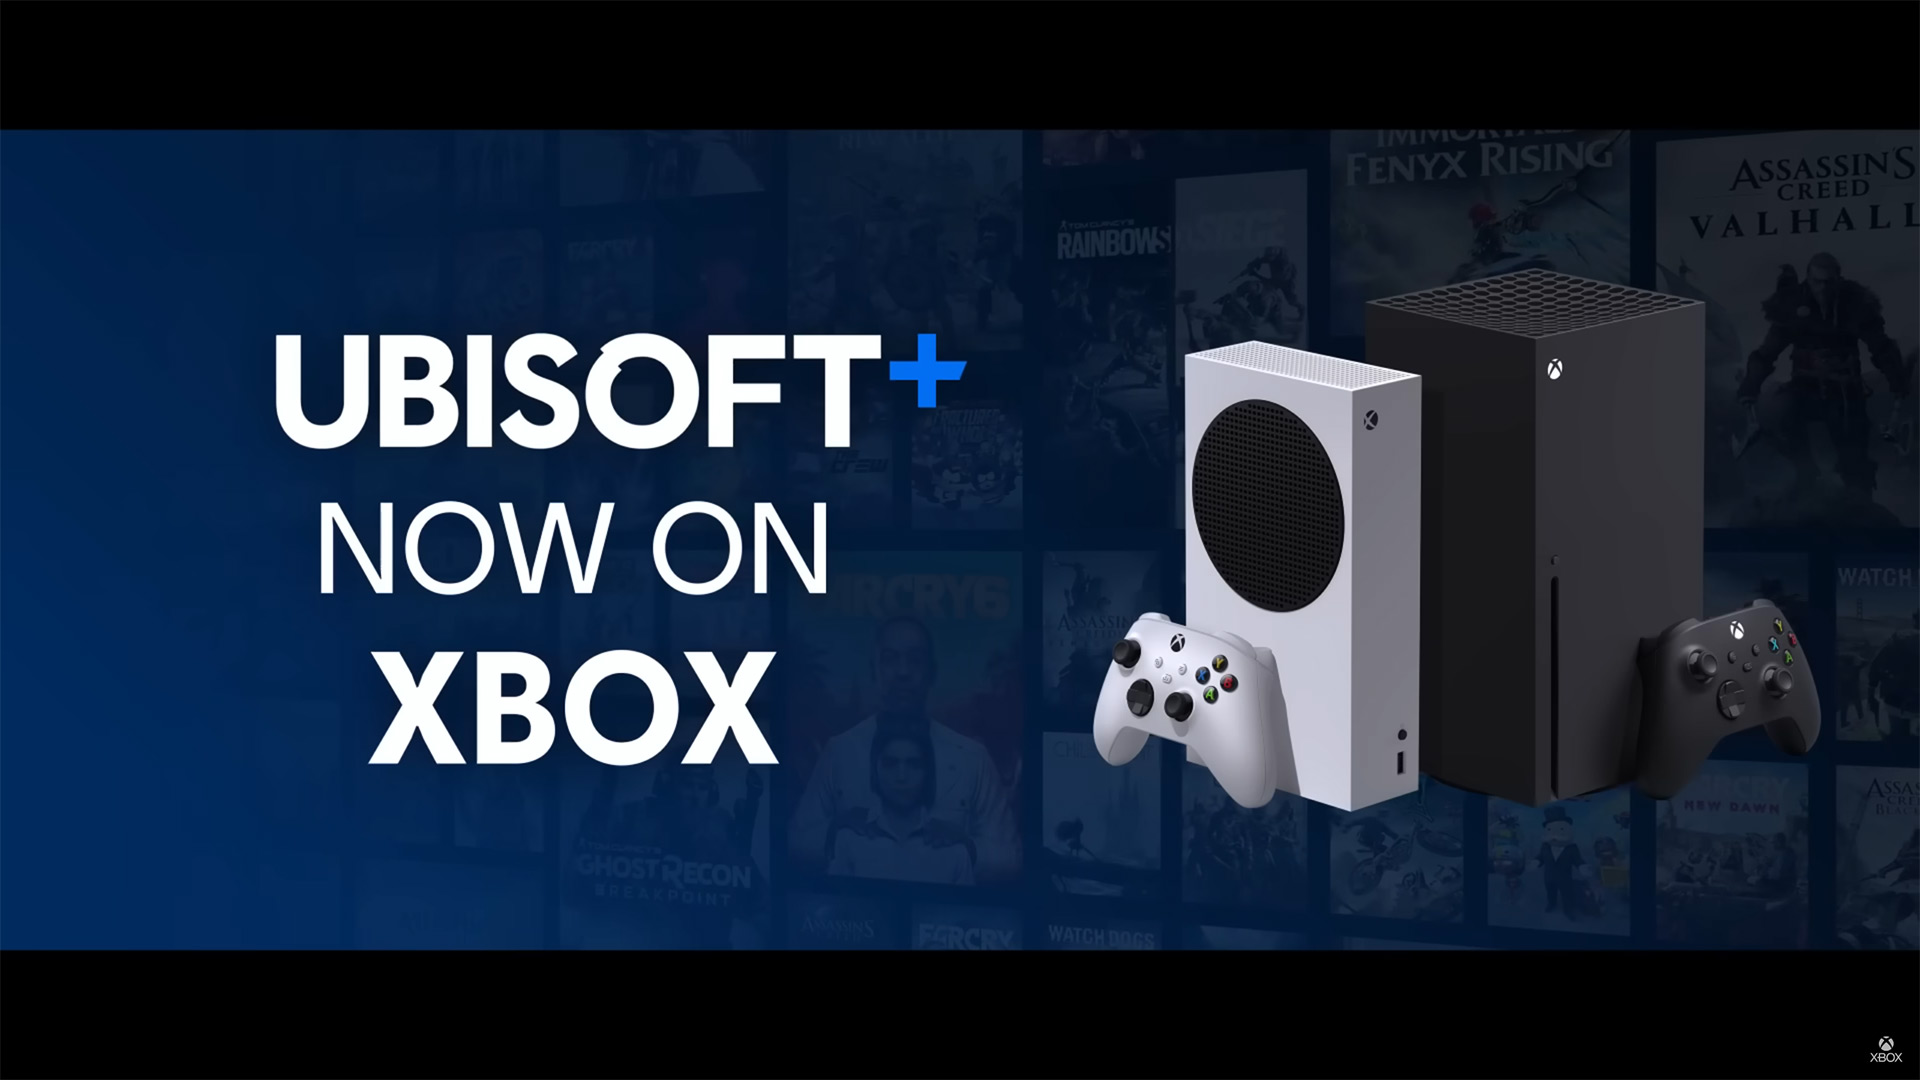 Ubisoft+ is now on Xbox